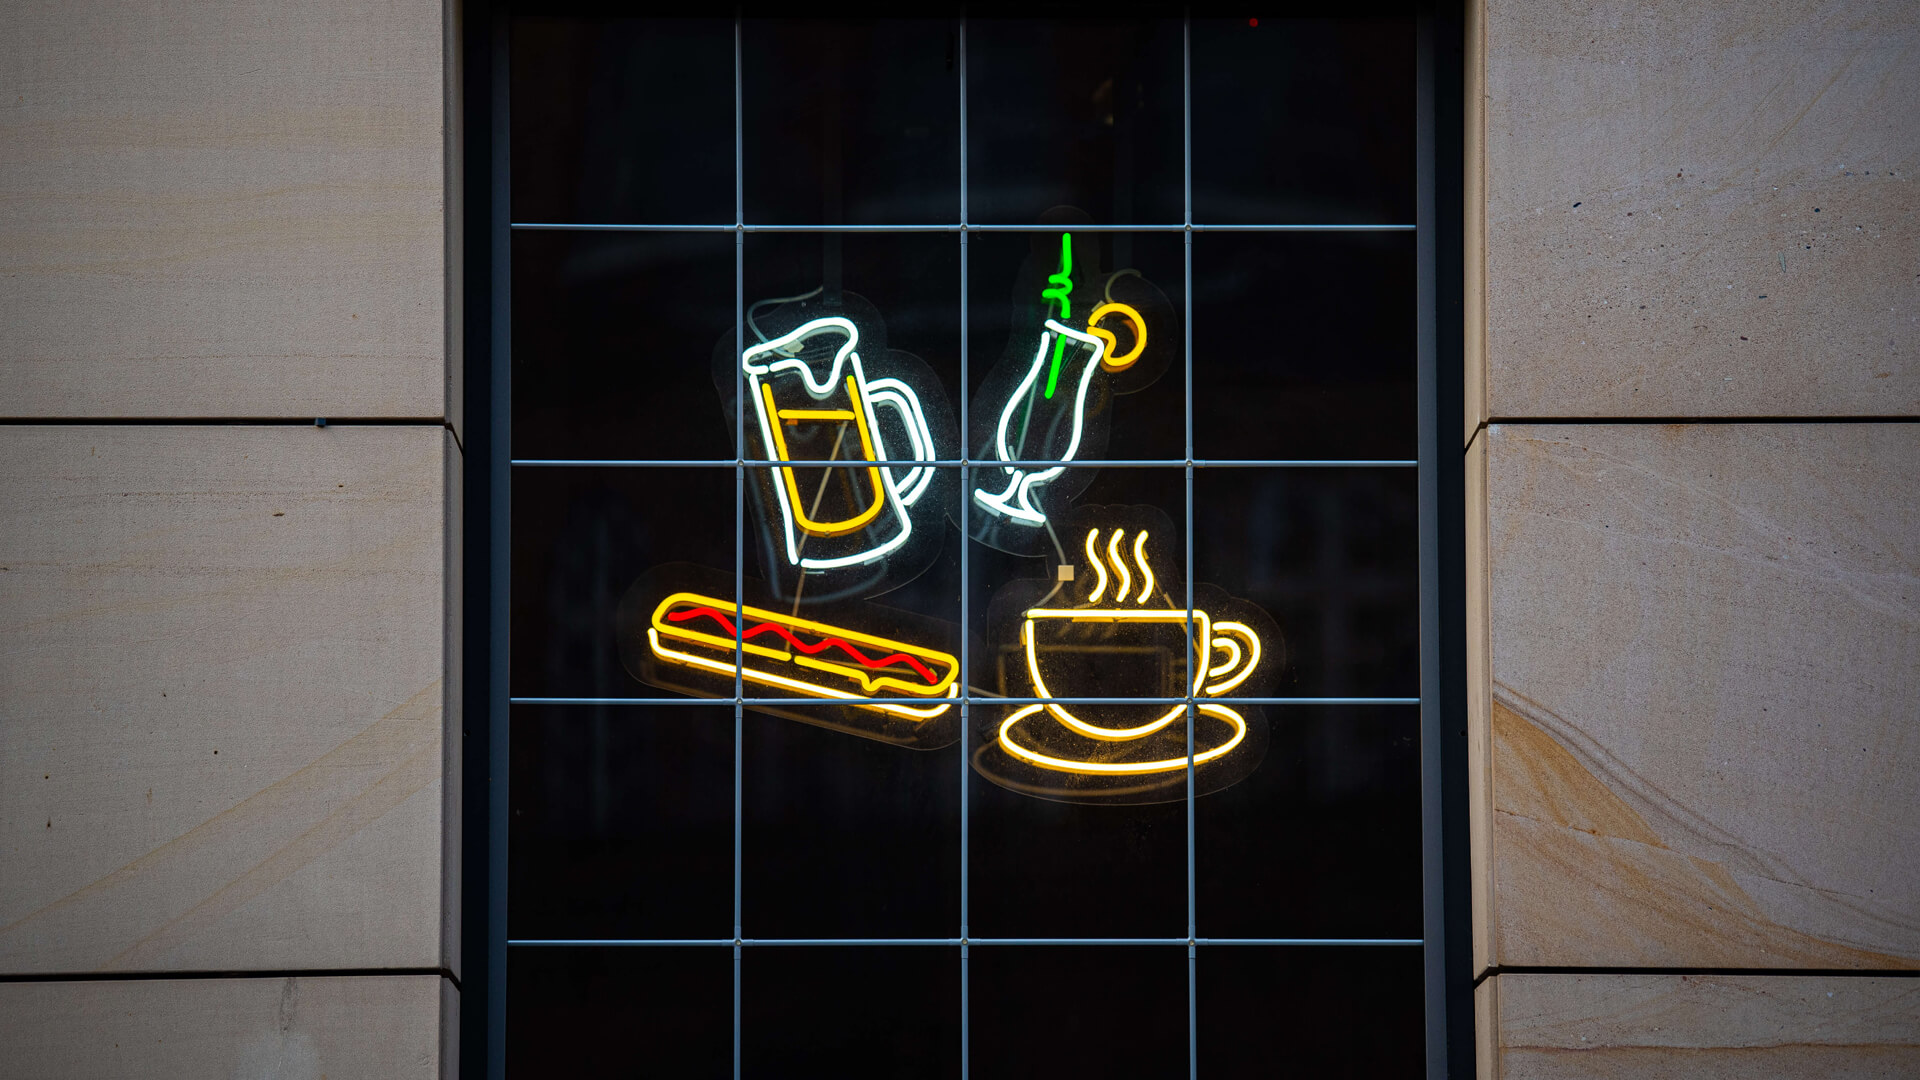 Pub Cafe - Neonowe wizualizacje w Pub Cafe.